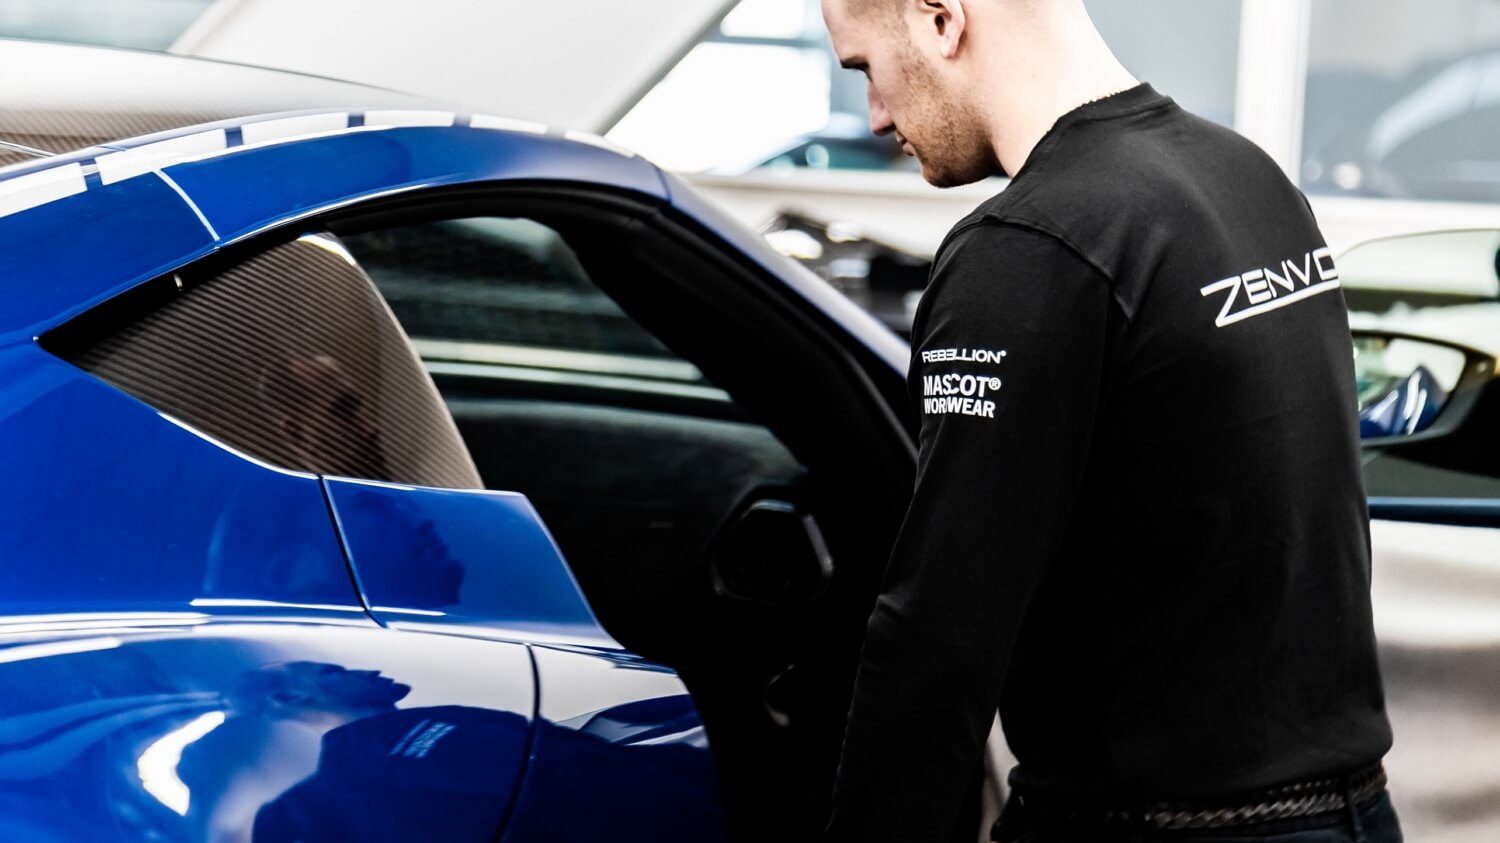 2019-Zenvo Automotive - MASCOT WORKWEAR - Zenvo technician